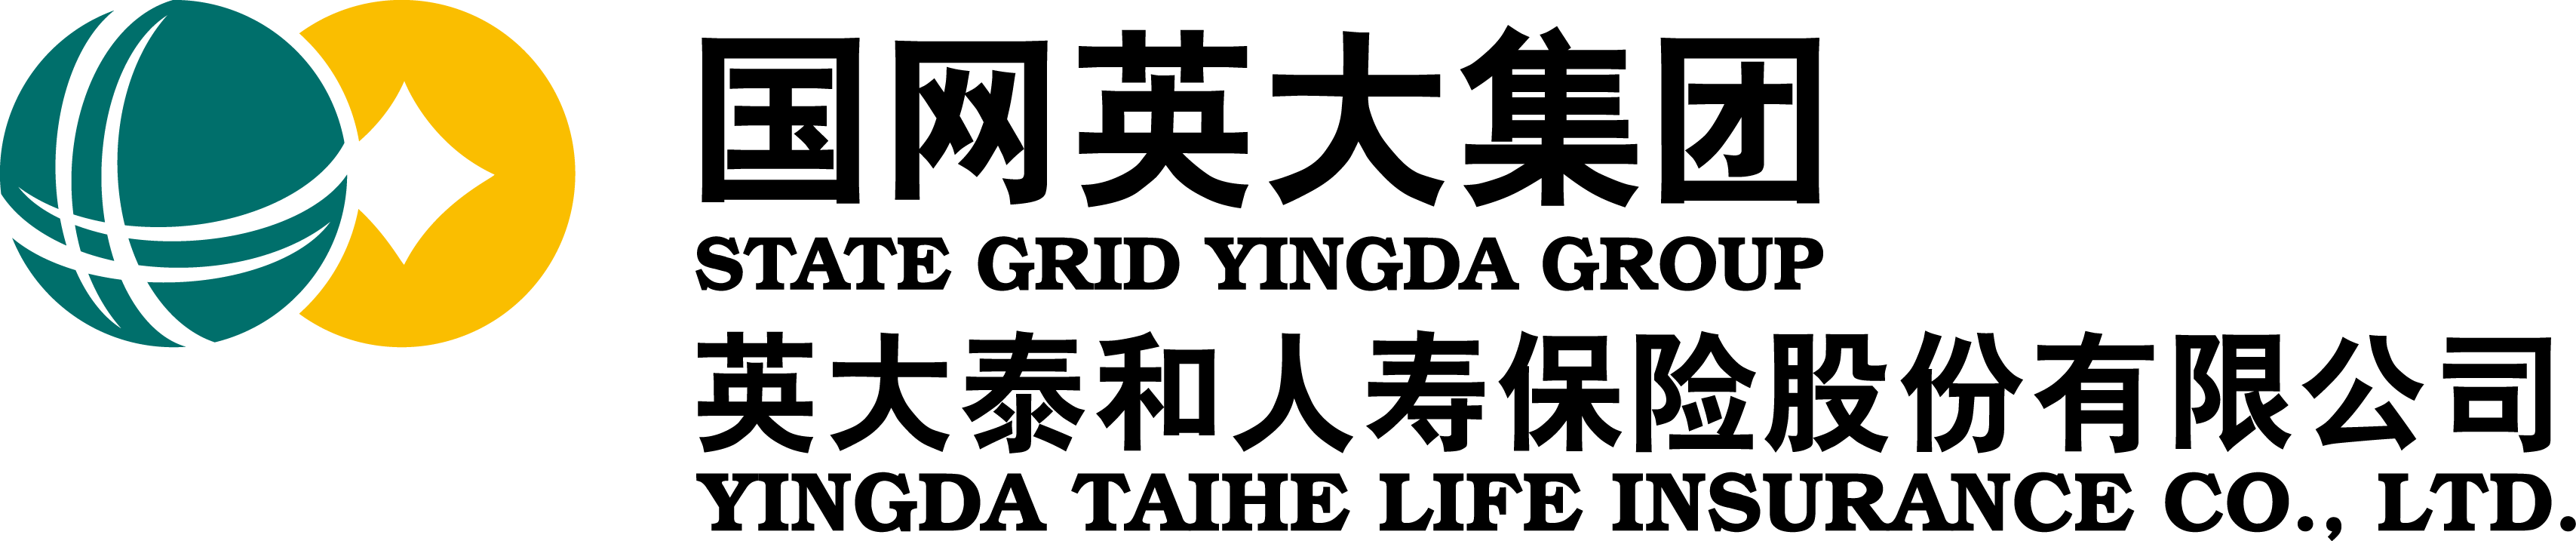 英大人寿logo图片